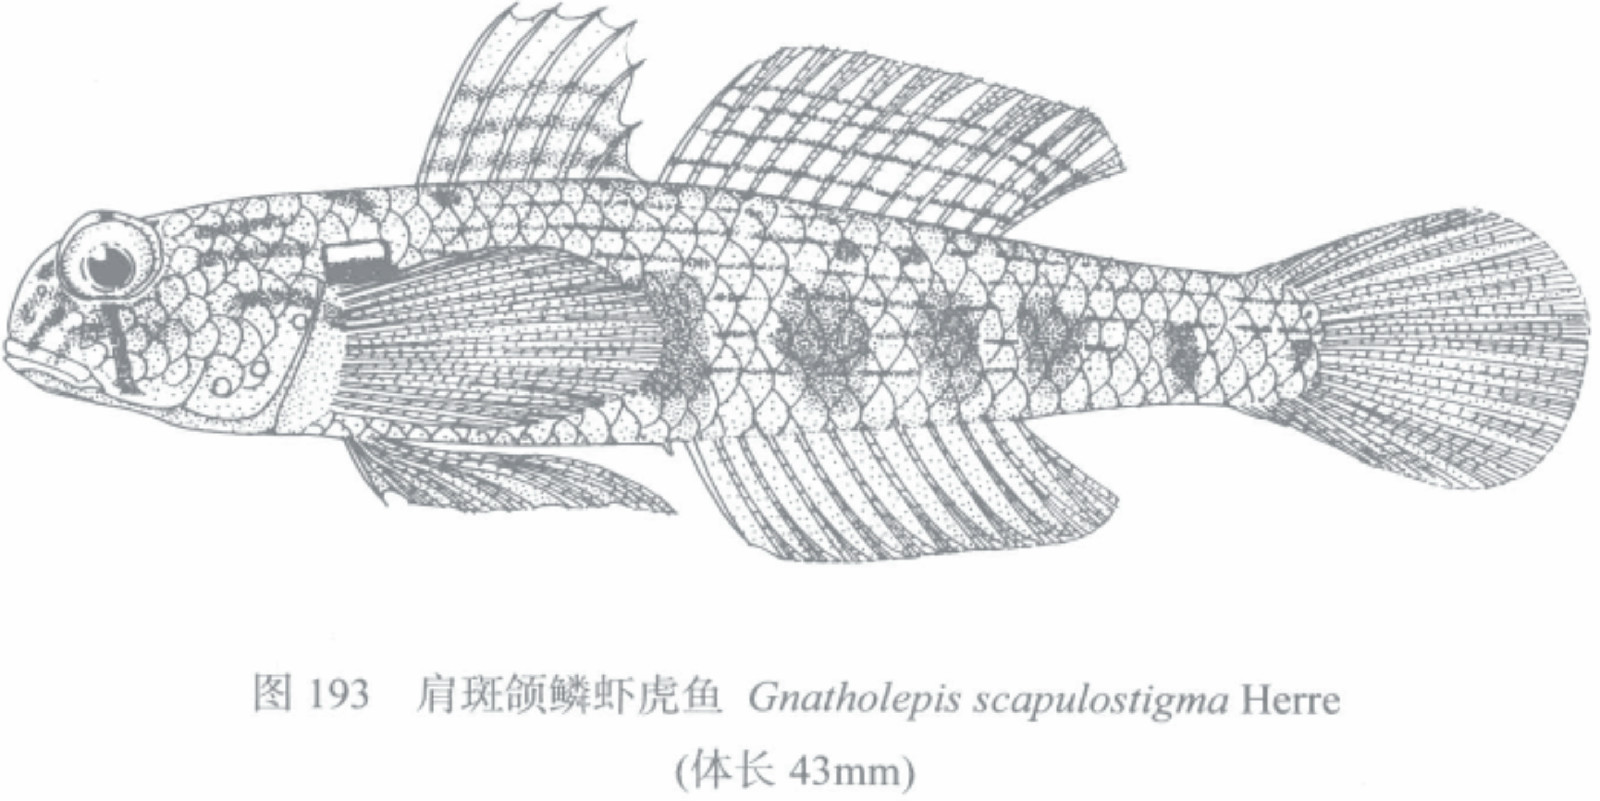 肩斑頜鱗蝦虎魚